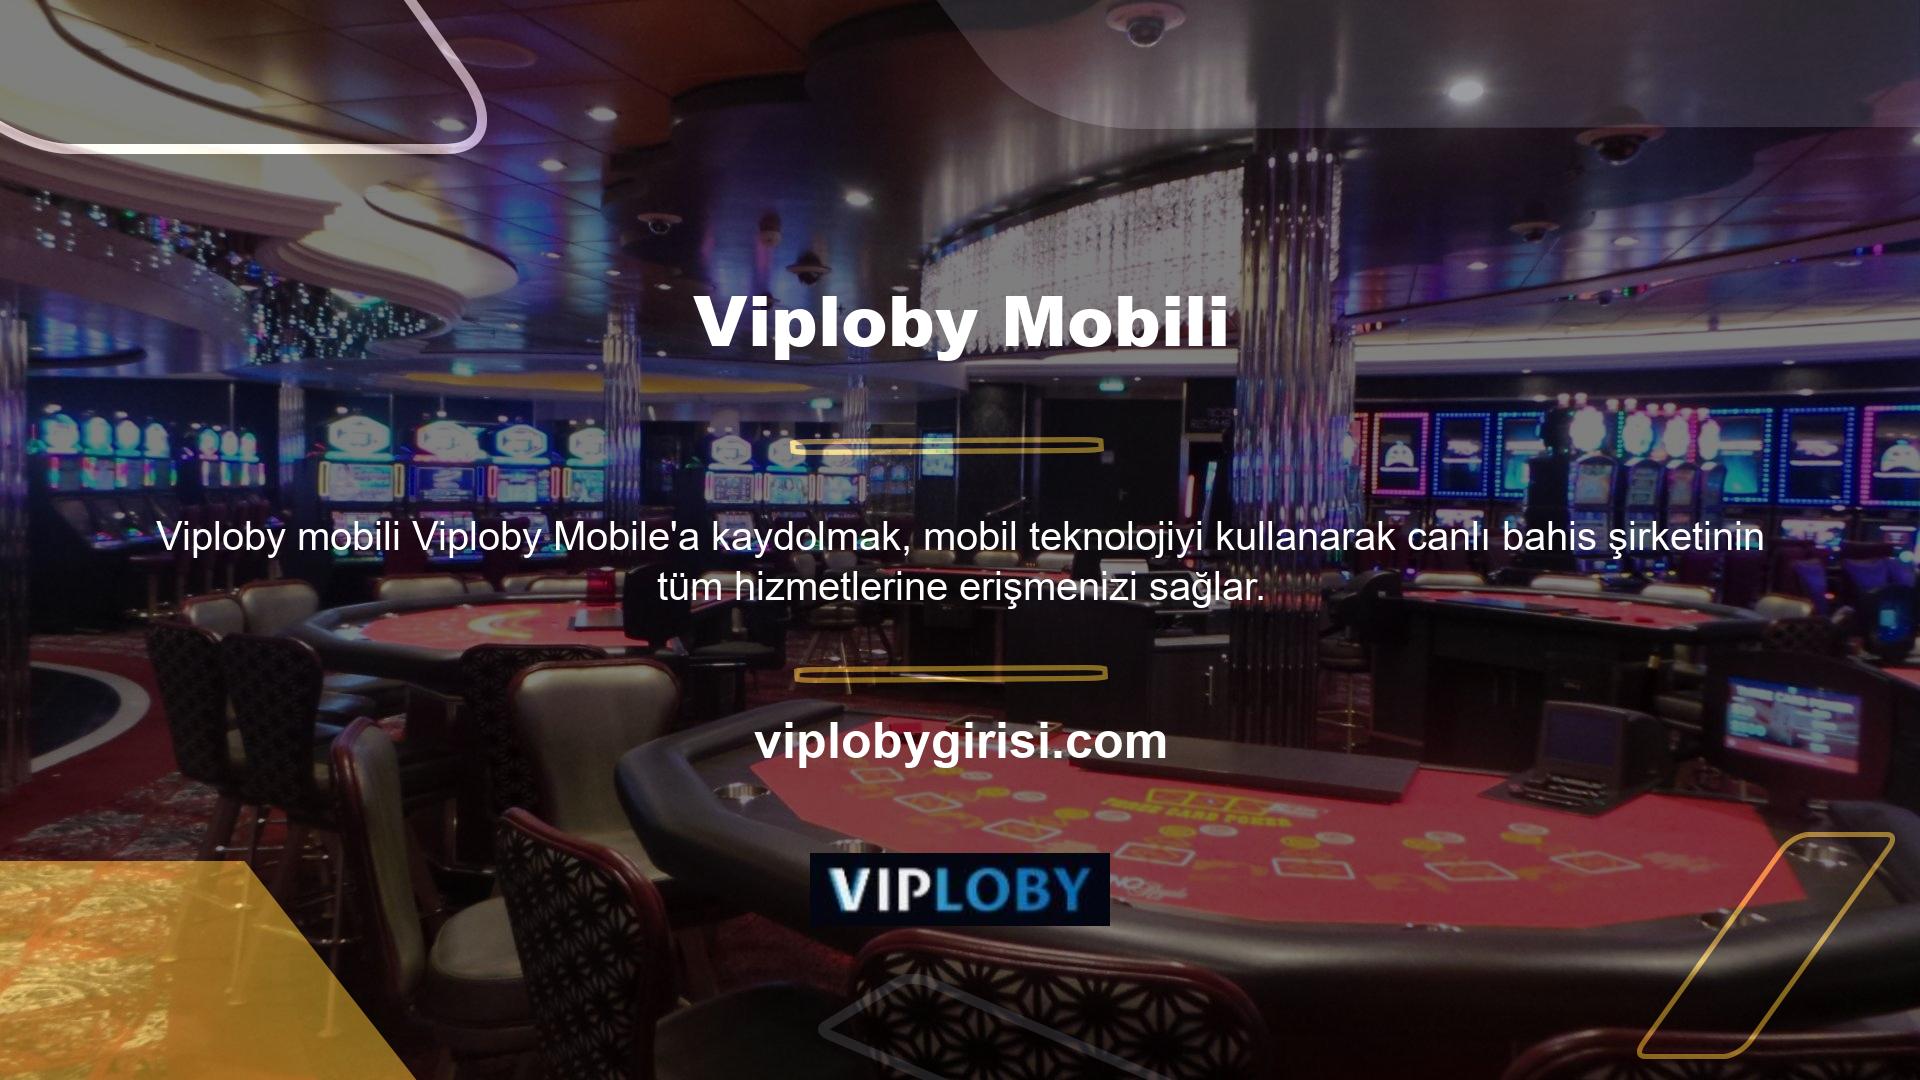 Mobil spor bahislerine ve canlı bahislere odaklanan Viploby, platform üyelerine en iyi altyapı kalitesini ve en büyük kazanma fırsatlarını sunuyor